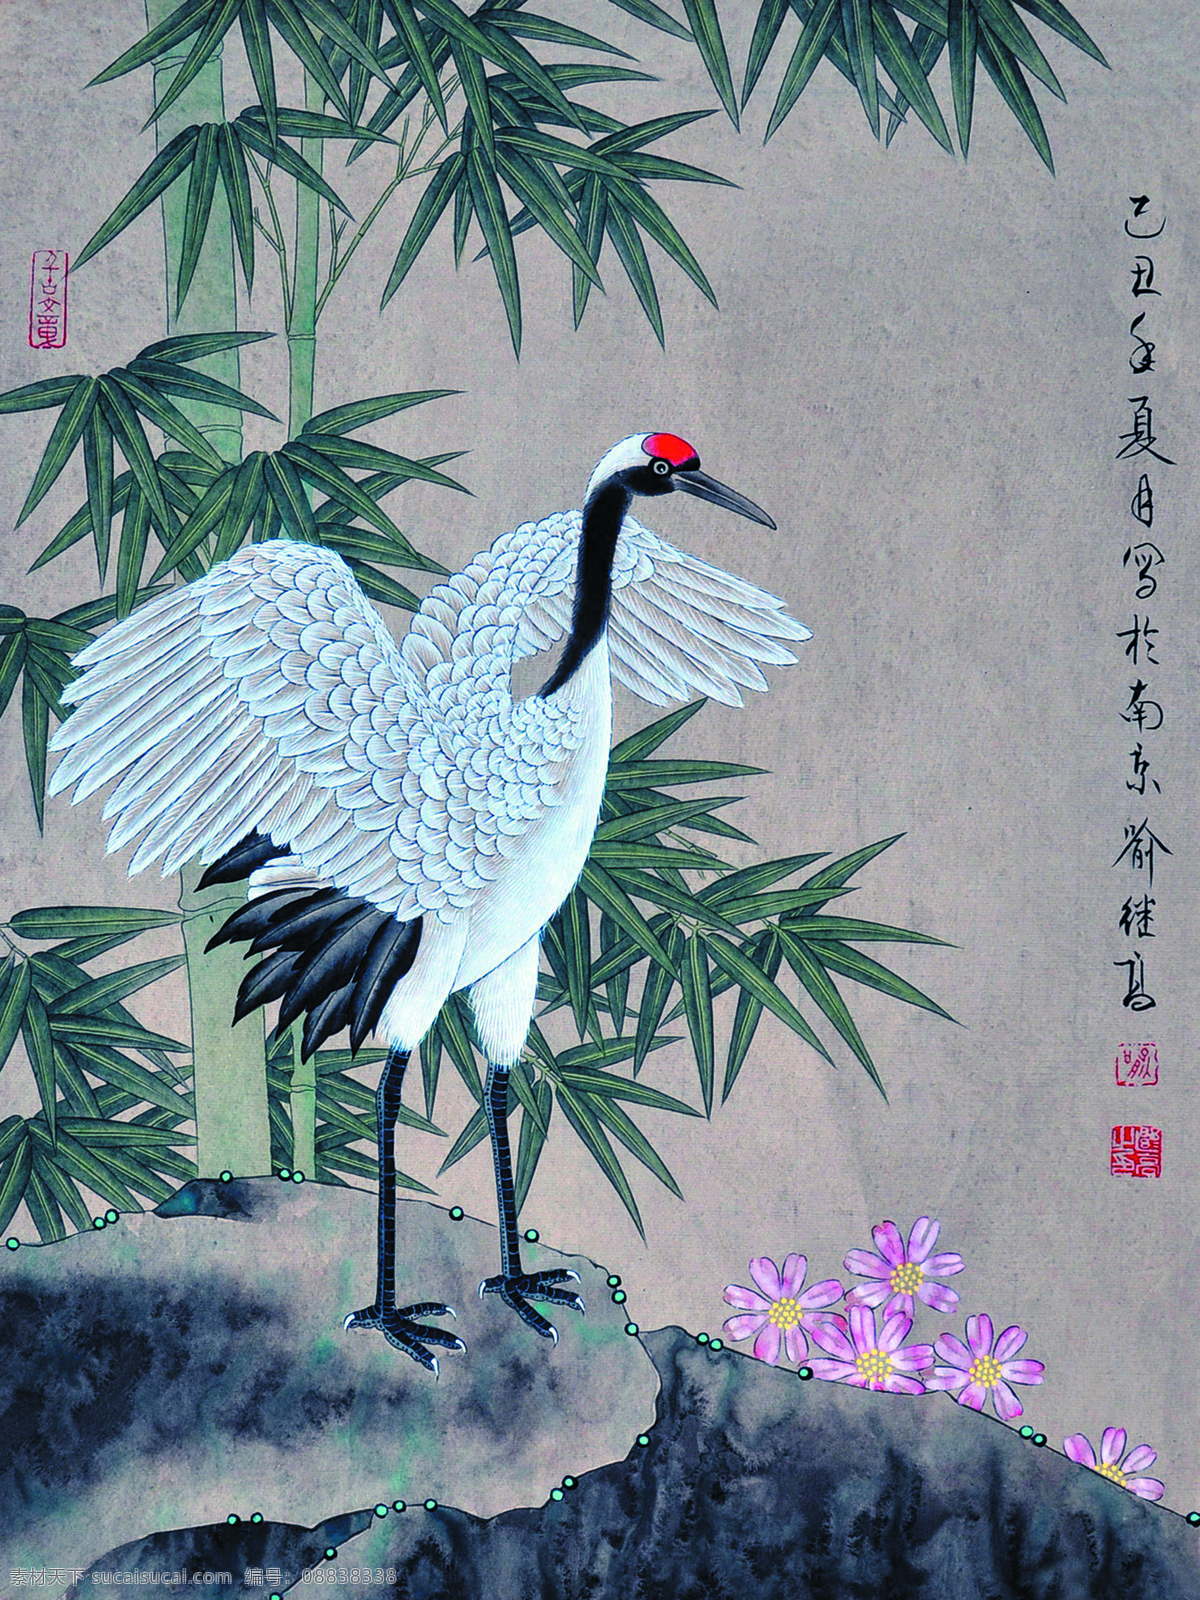 竹鹤图 美术 中国画 工笔画 白鹤 竹子 石头 喻继高国画 文化艺术 绘画书法